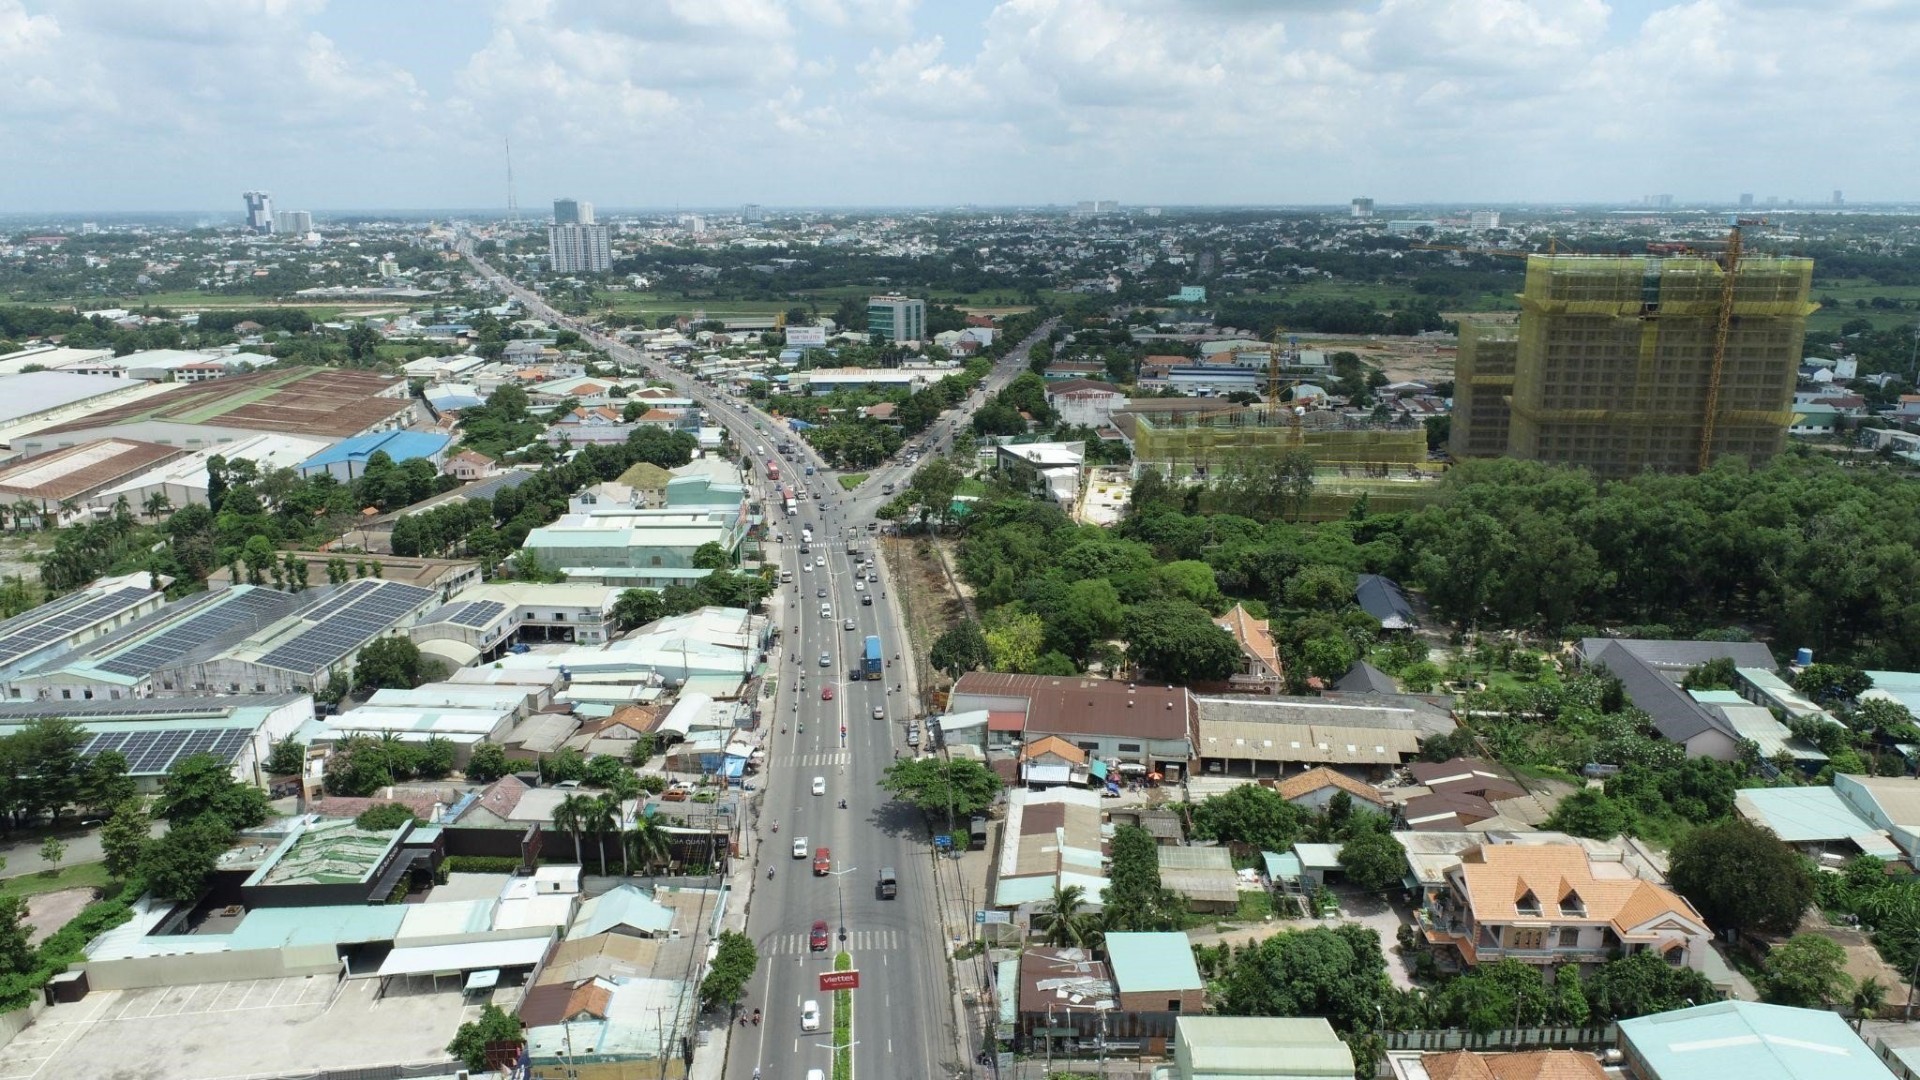 Bất động sản Thuận An tăng sức hút từ định hướng phát triển đô thị trọng điểm